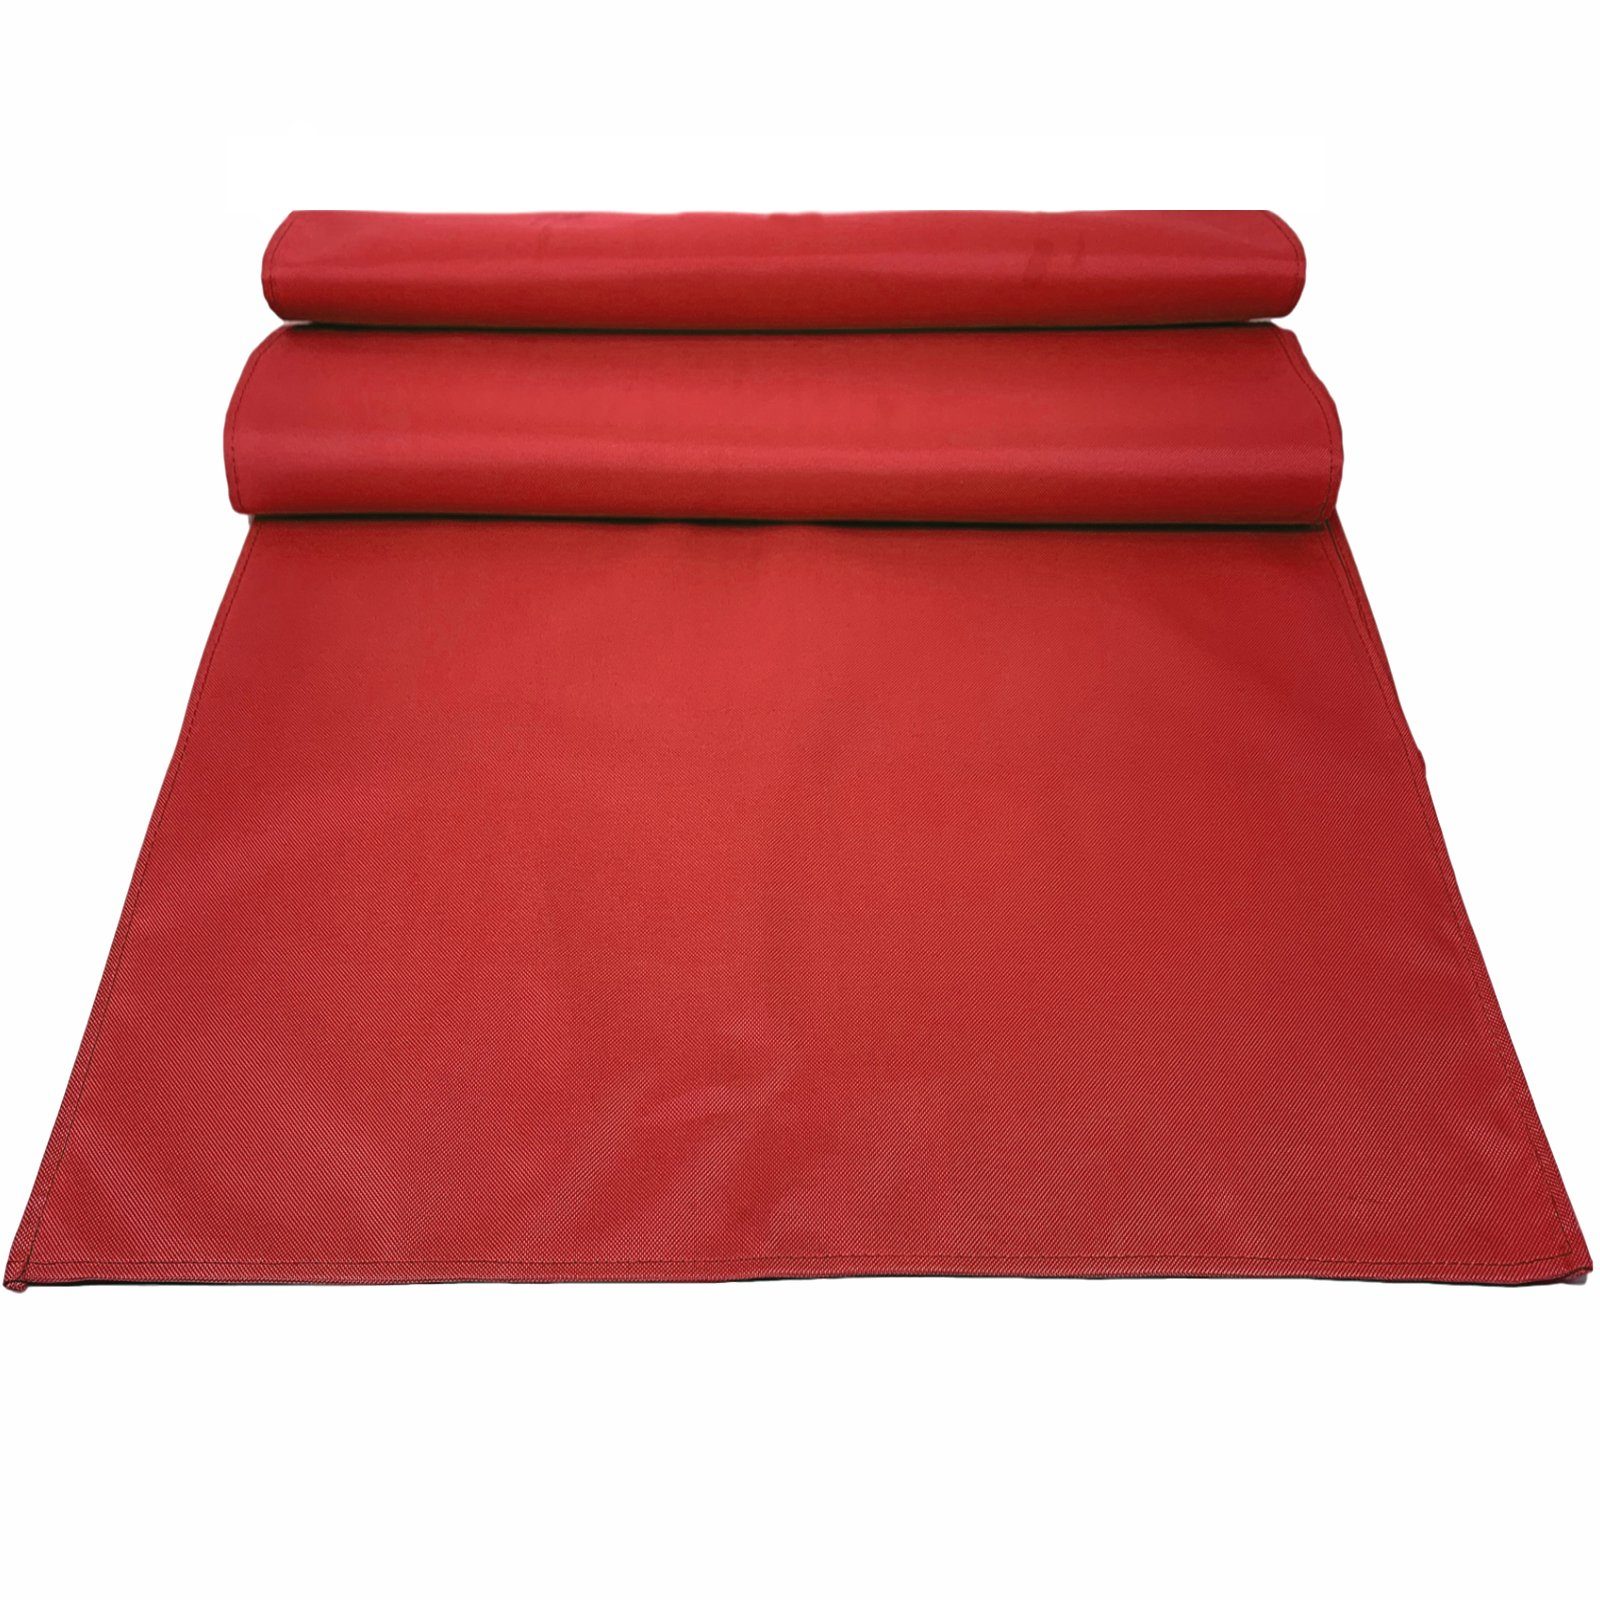 JEMIDI Tischläufer Platzdecken Tischset 2er Outdoor Pack und wasserabweisende Rot